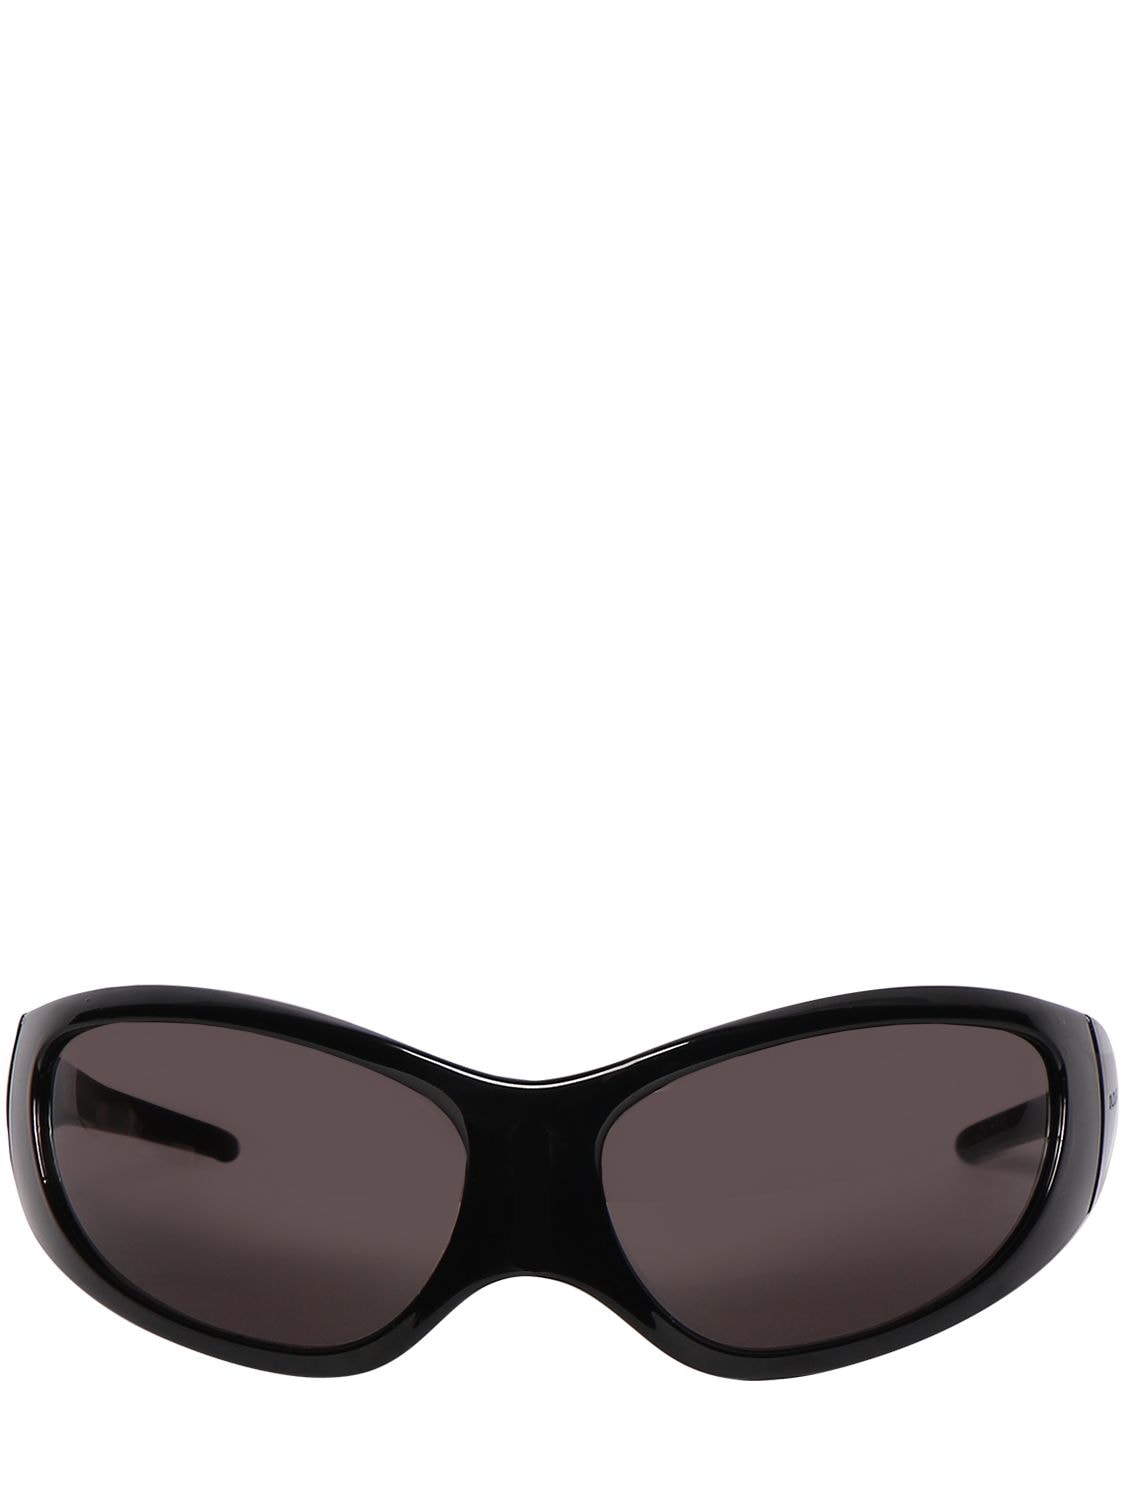 Image of 0052s Xxl Acetate Sunglasses